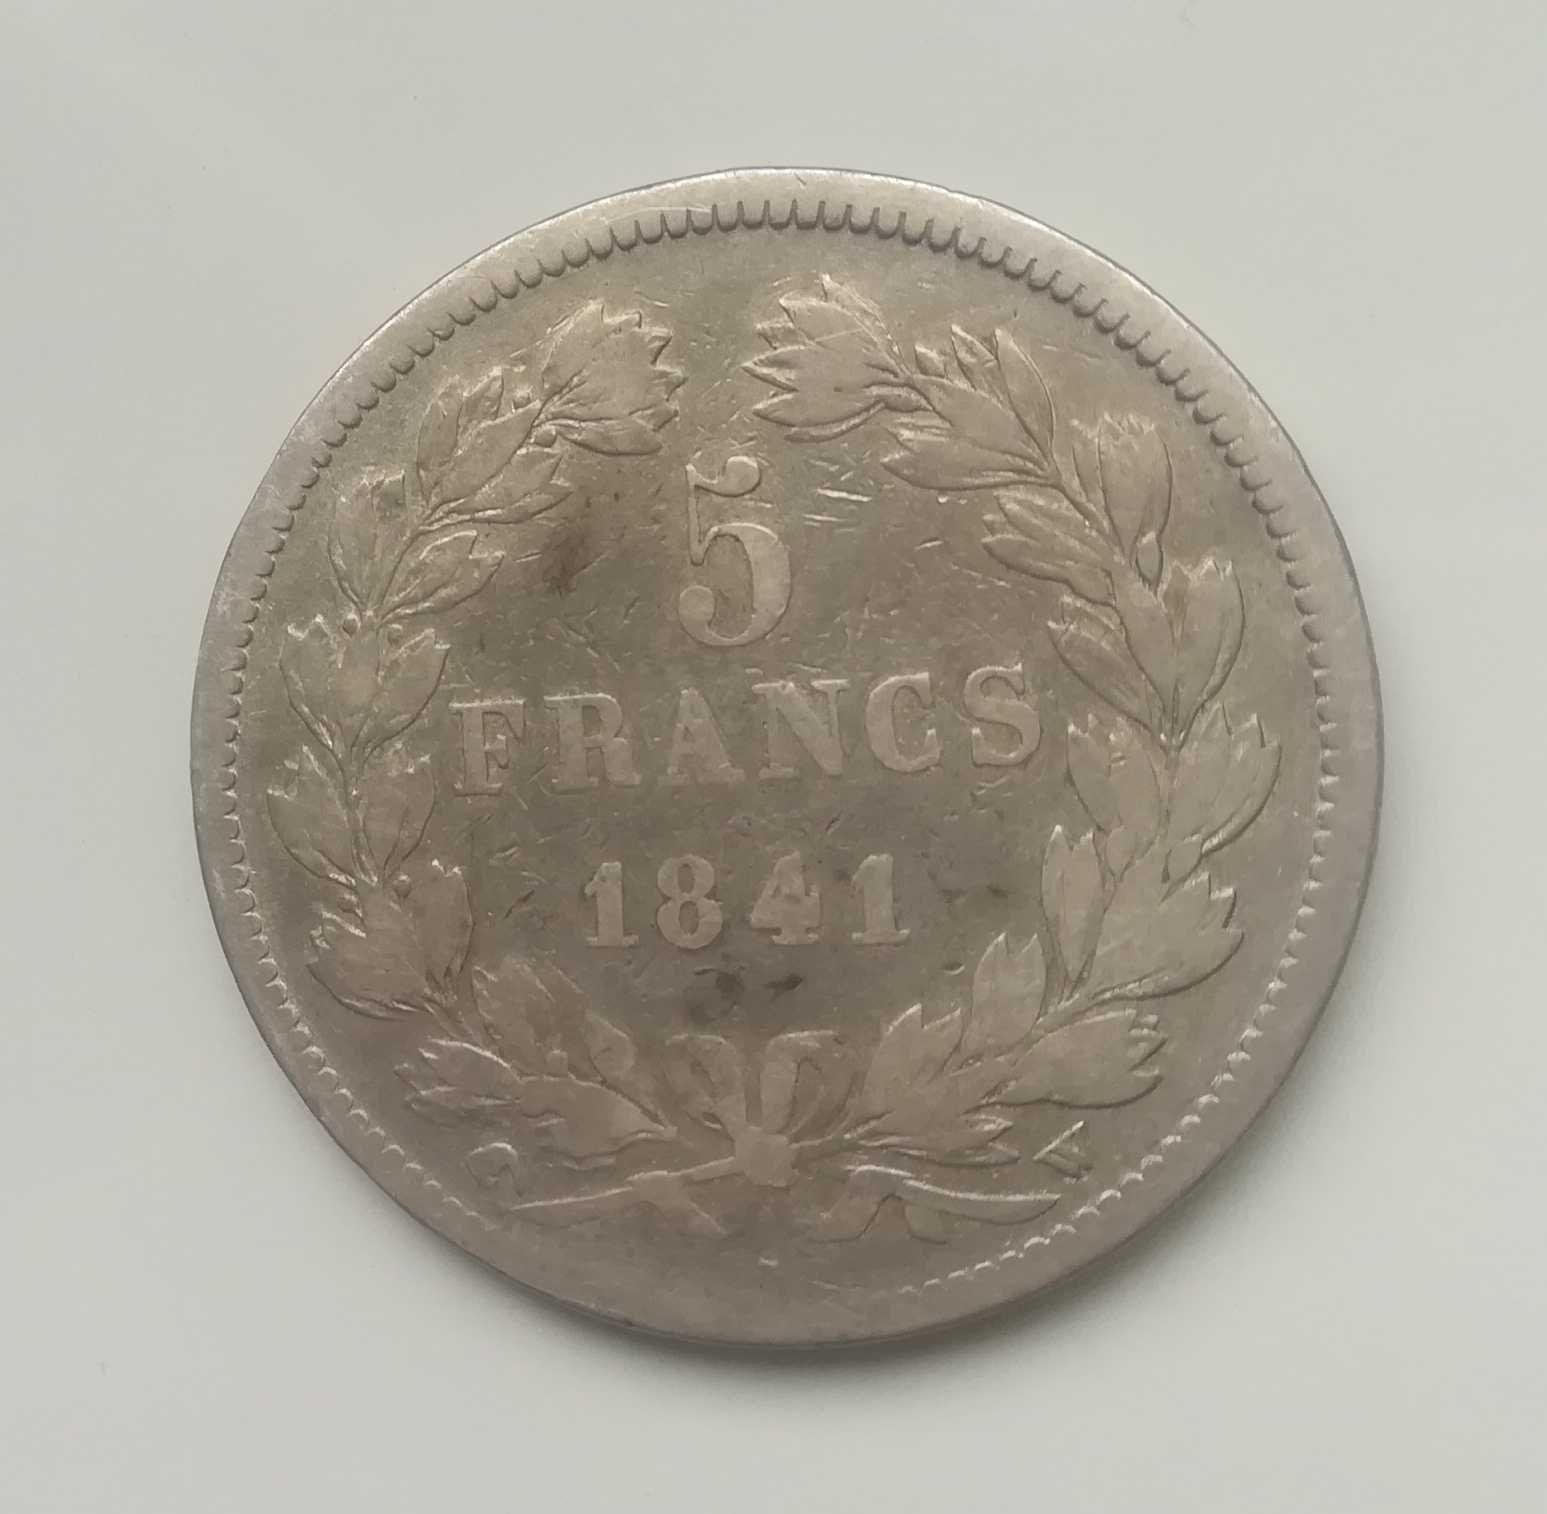 Moneta srebrna srebro 5 franków Francja z 1841 roku typ W. Monety Ag